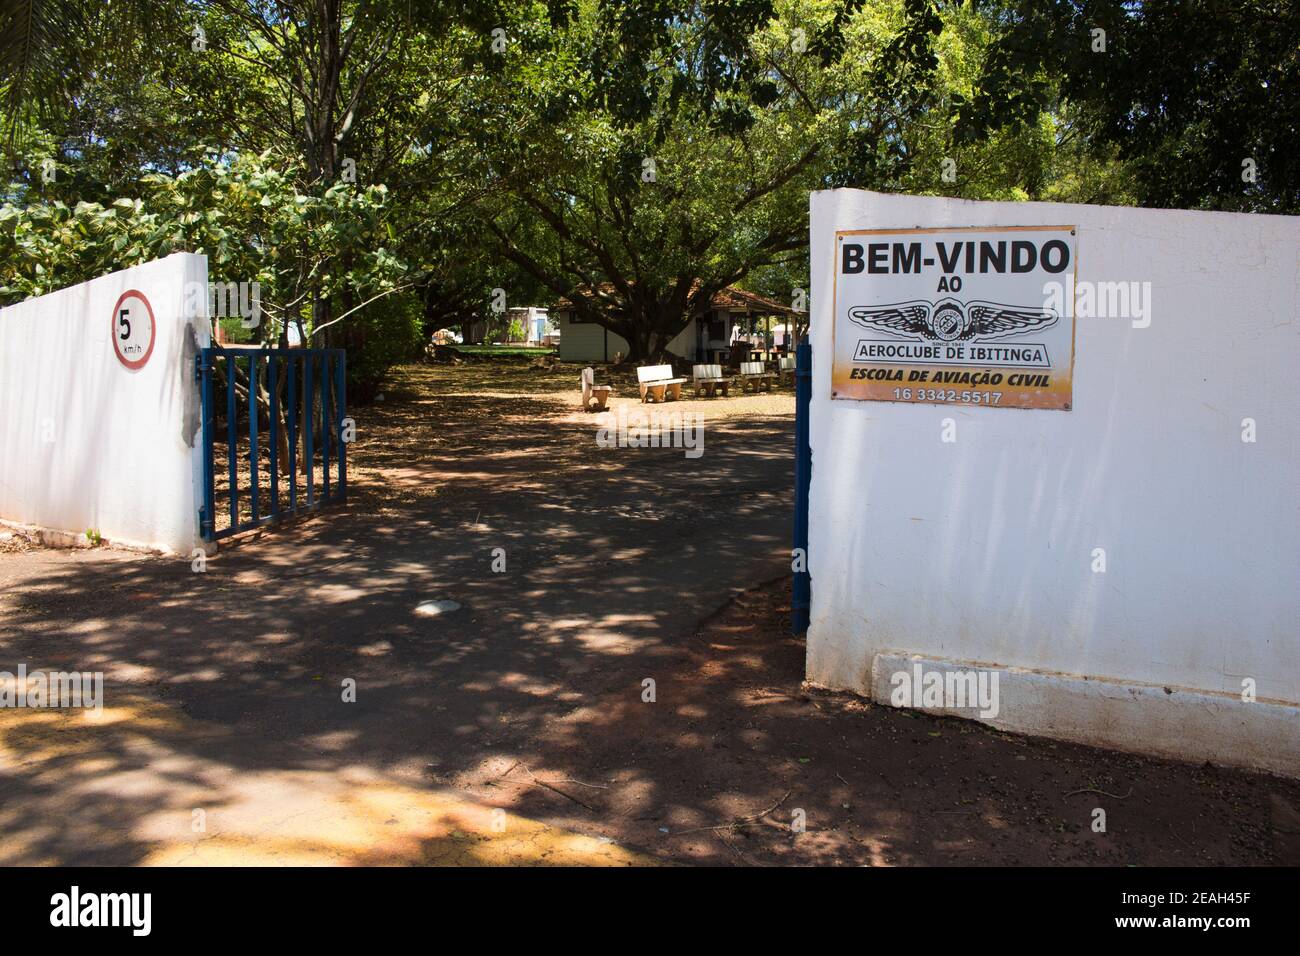 Ibitinga, SP, Brazil - 02 08 2021: Close up of Ibitinga's Flying club entrance and signage Stock Photo